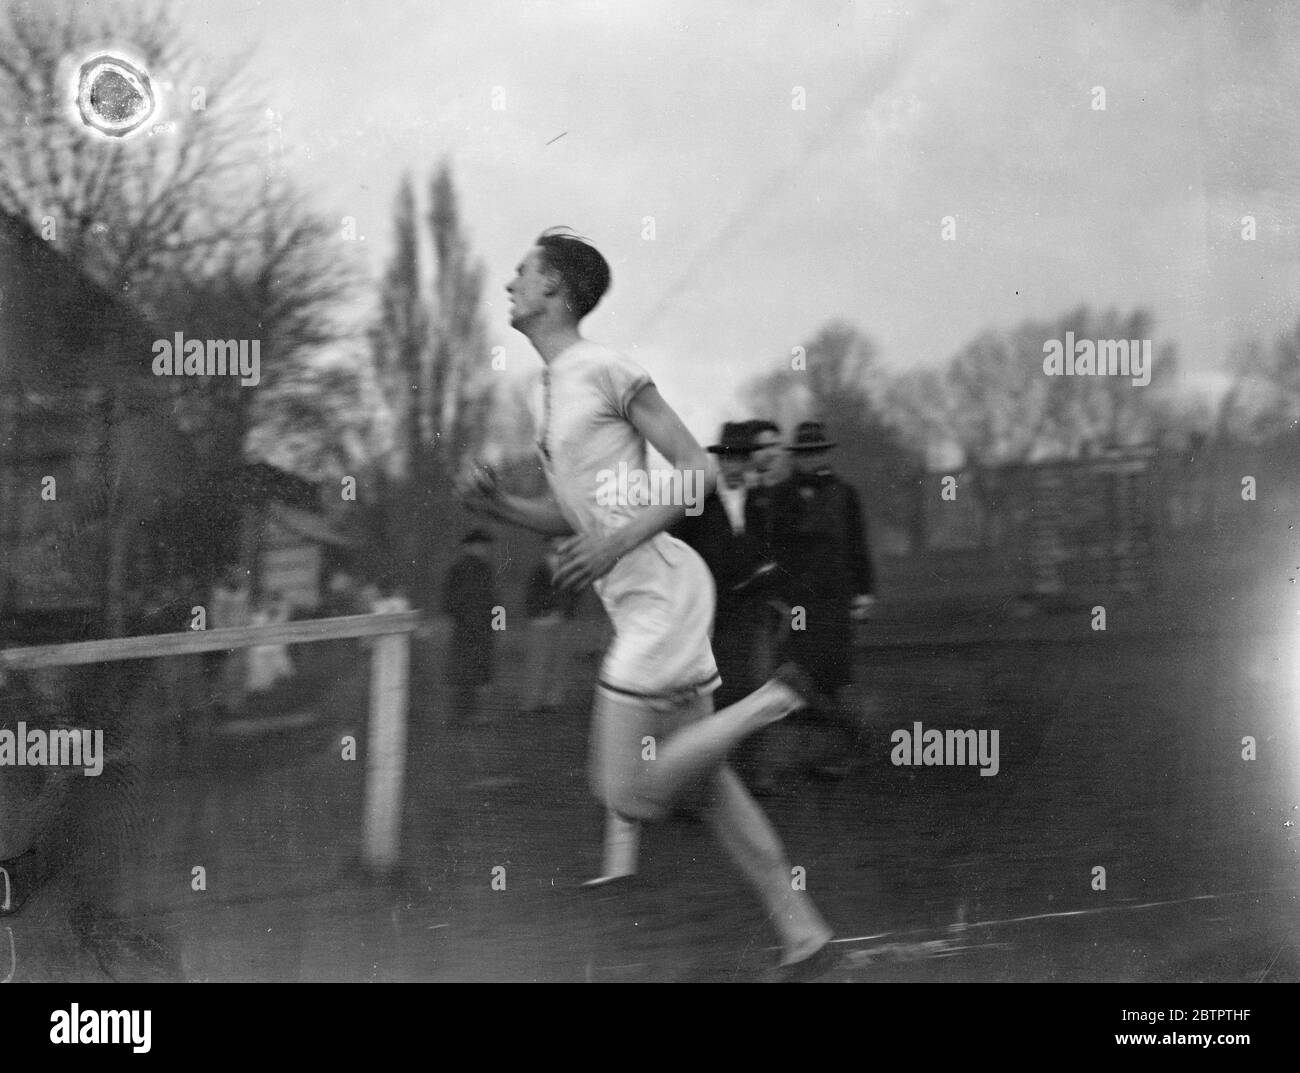 Finales de Cambridge . J A W BLACKWELL . 15 février 1932 Banque D'Images